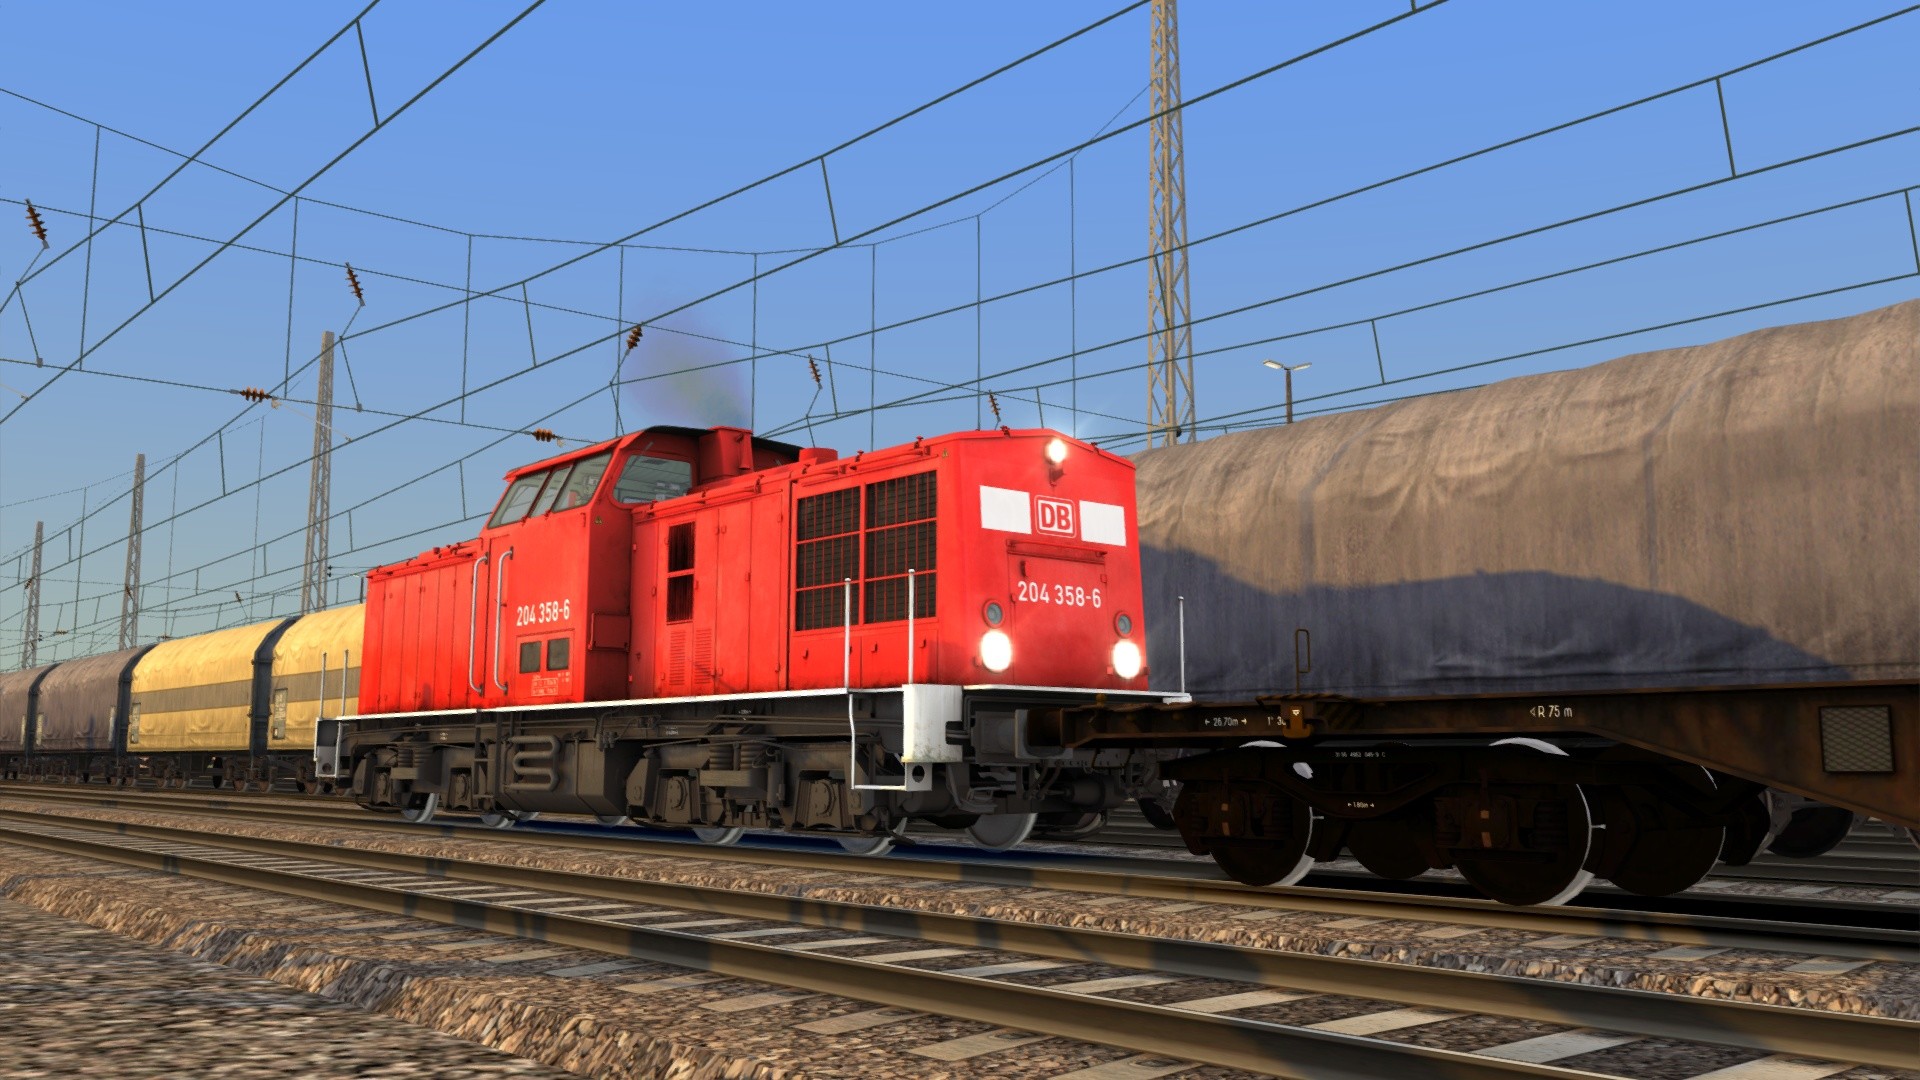 Train Simulator - DB BR 204 Loco Add-On DLC Steam CD Key 0.9 $